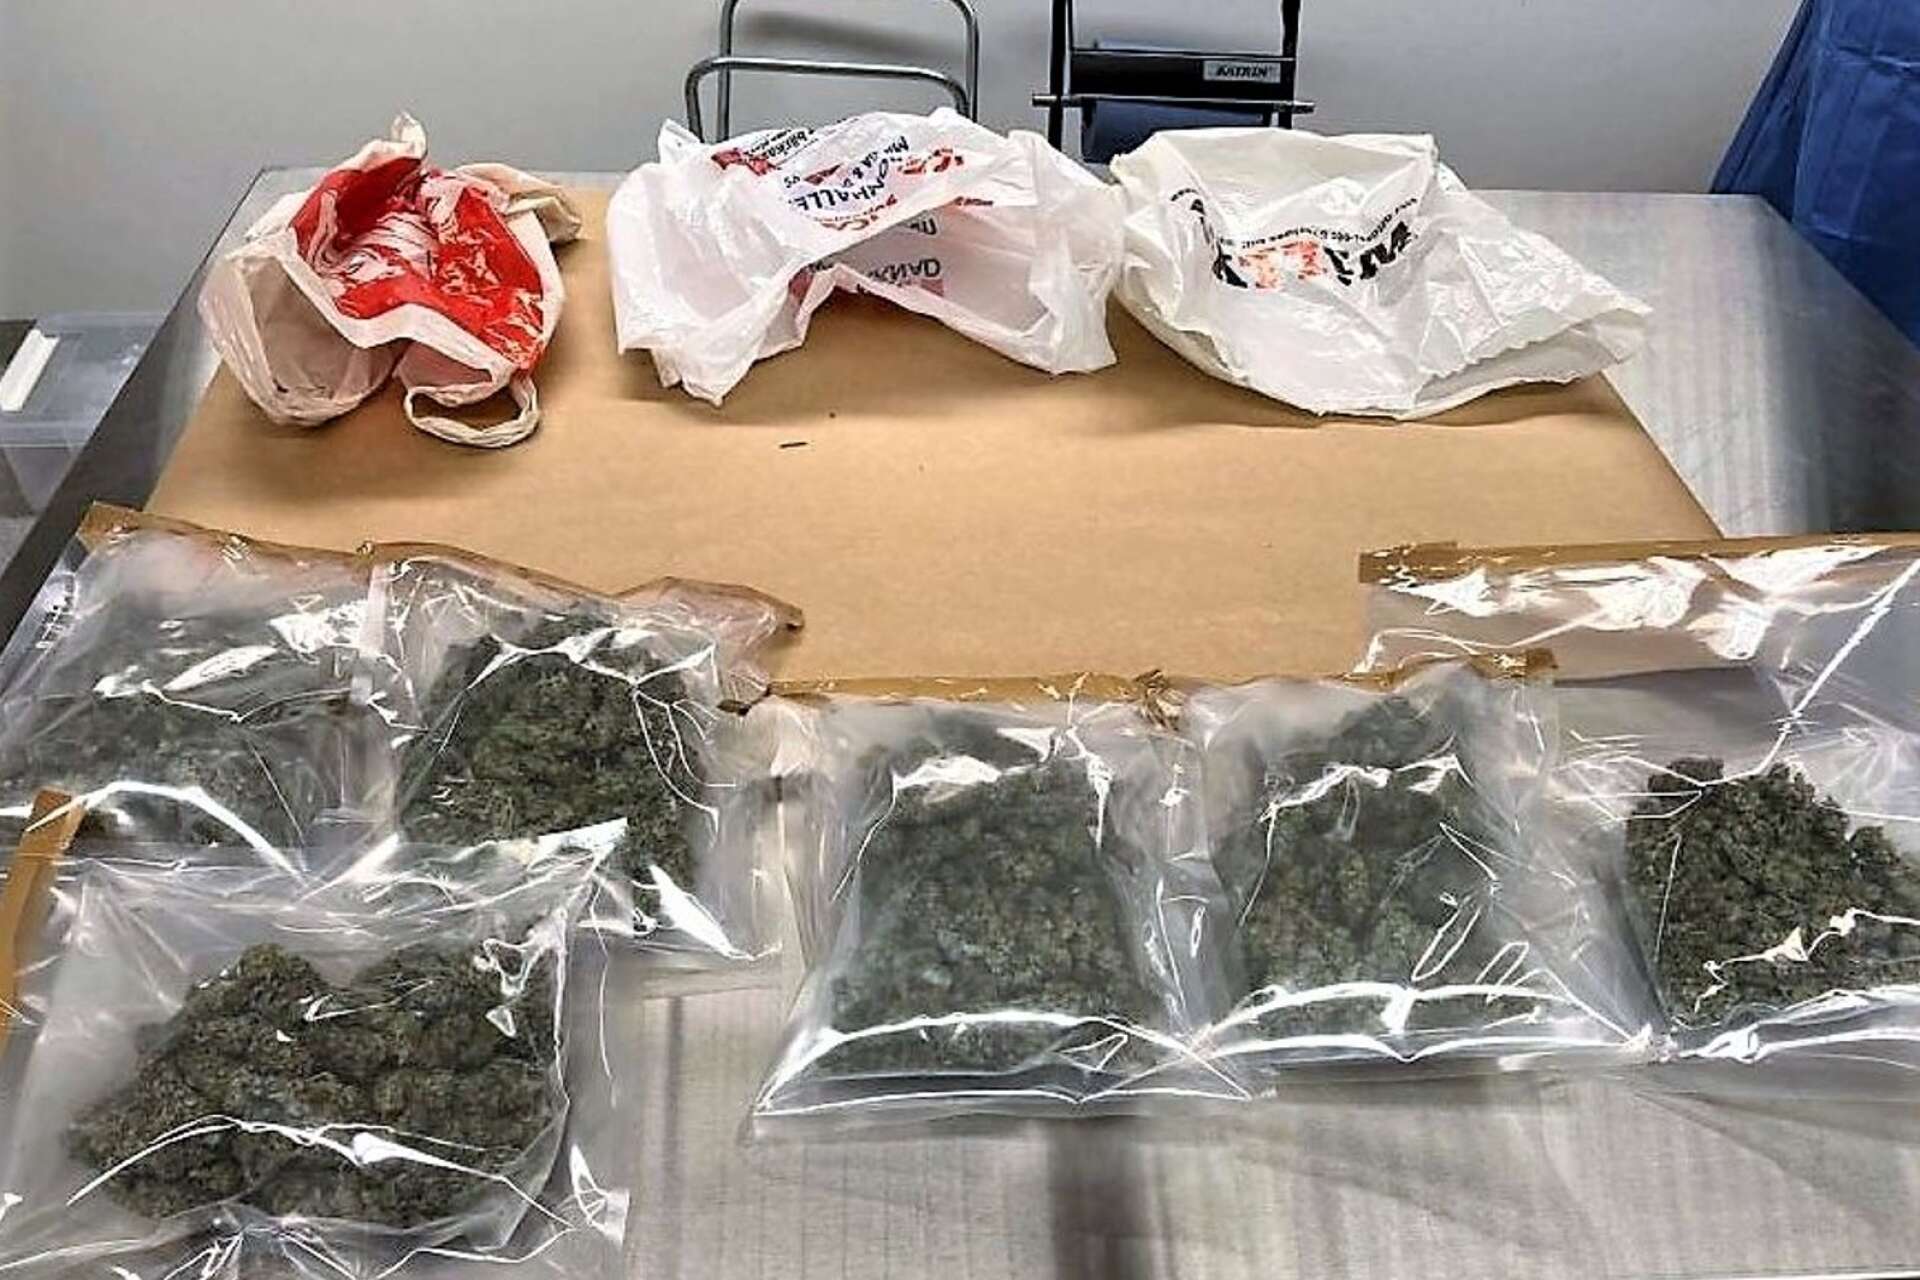 Polisen påträffade nästan ett kilo cannabis vid husrannsakan.